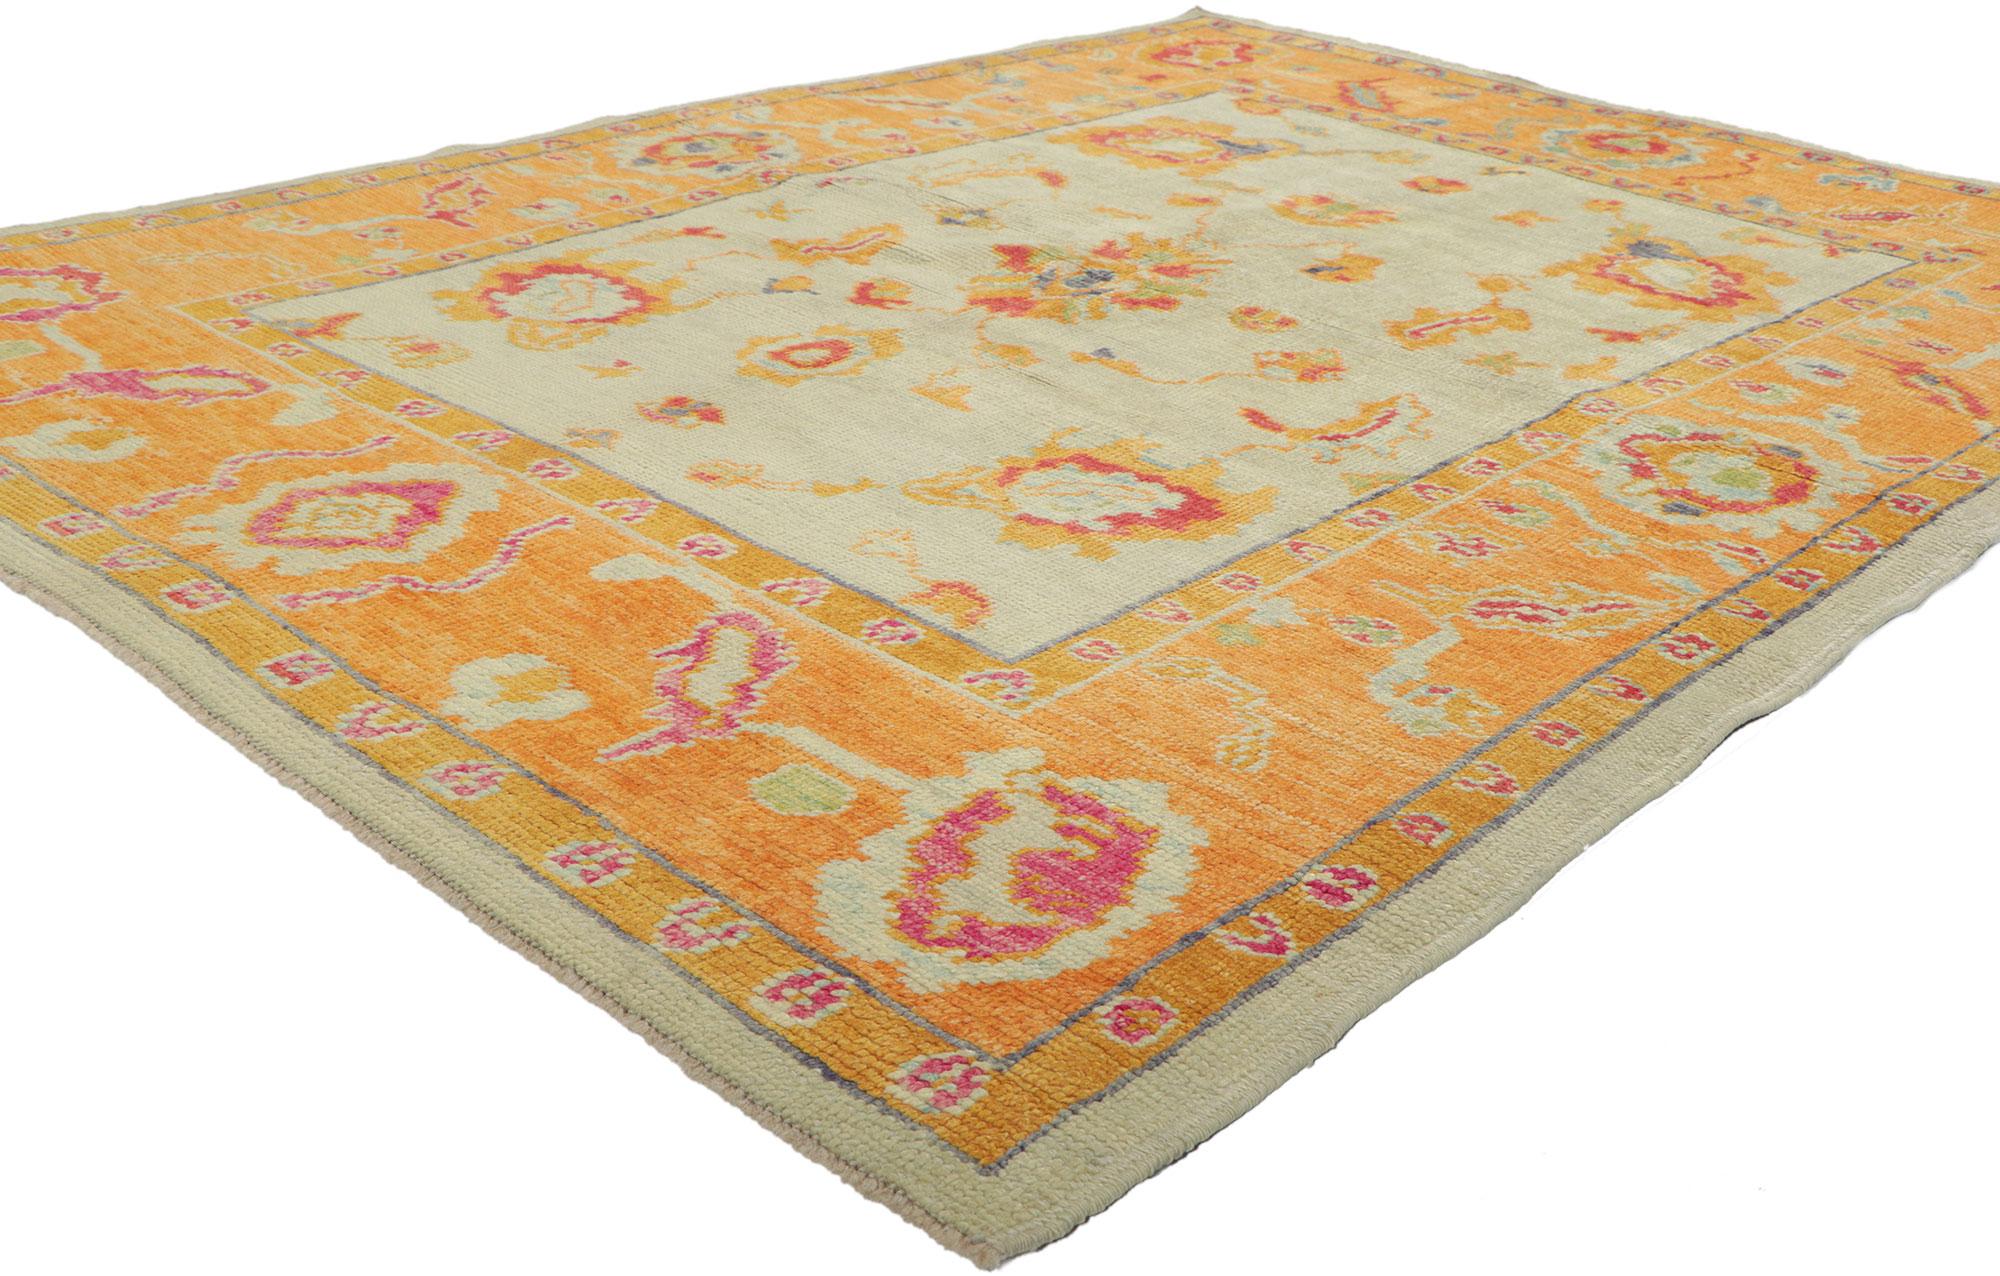 52367 New Colorful Turkish Oushak Rug, 05'00 x 06'09. 
Ce tapis turc contemporain Oushak en laine nouée à la main présente un motif floral all-over vibrant sur un fond ivoire abrasé. Rappelant le motif classique du médaillon quatre et un de